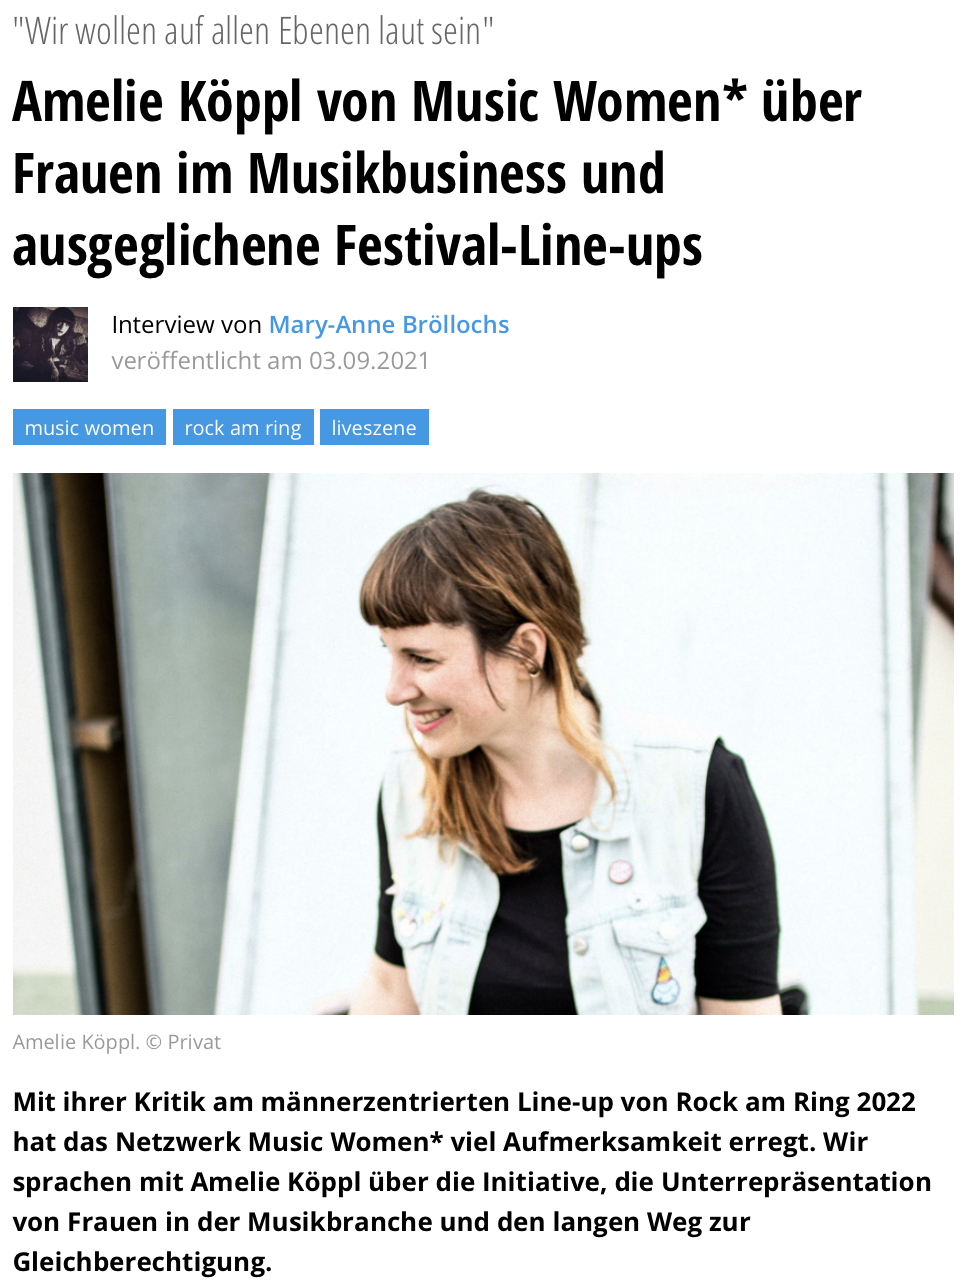 Music Women* Germany im Interview mit BackstagePro 